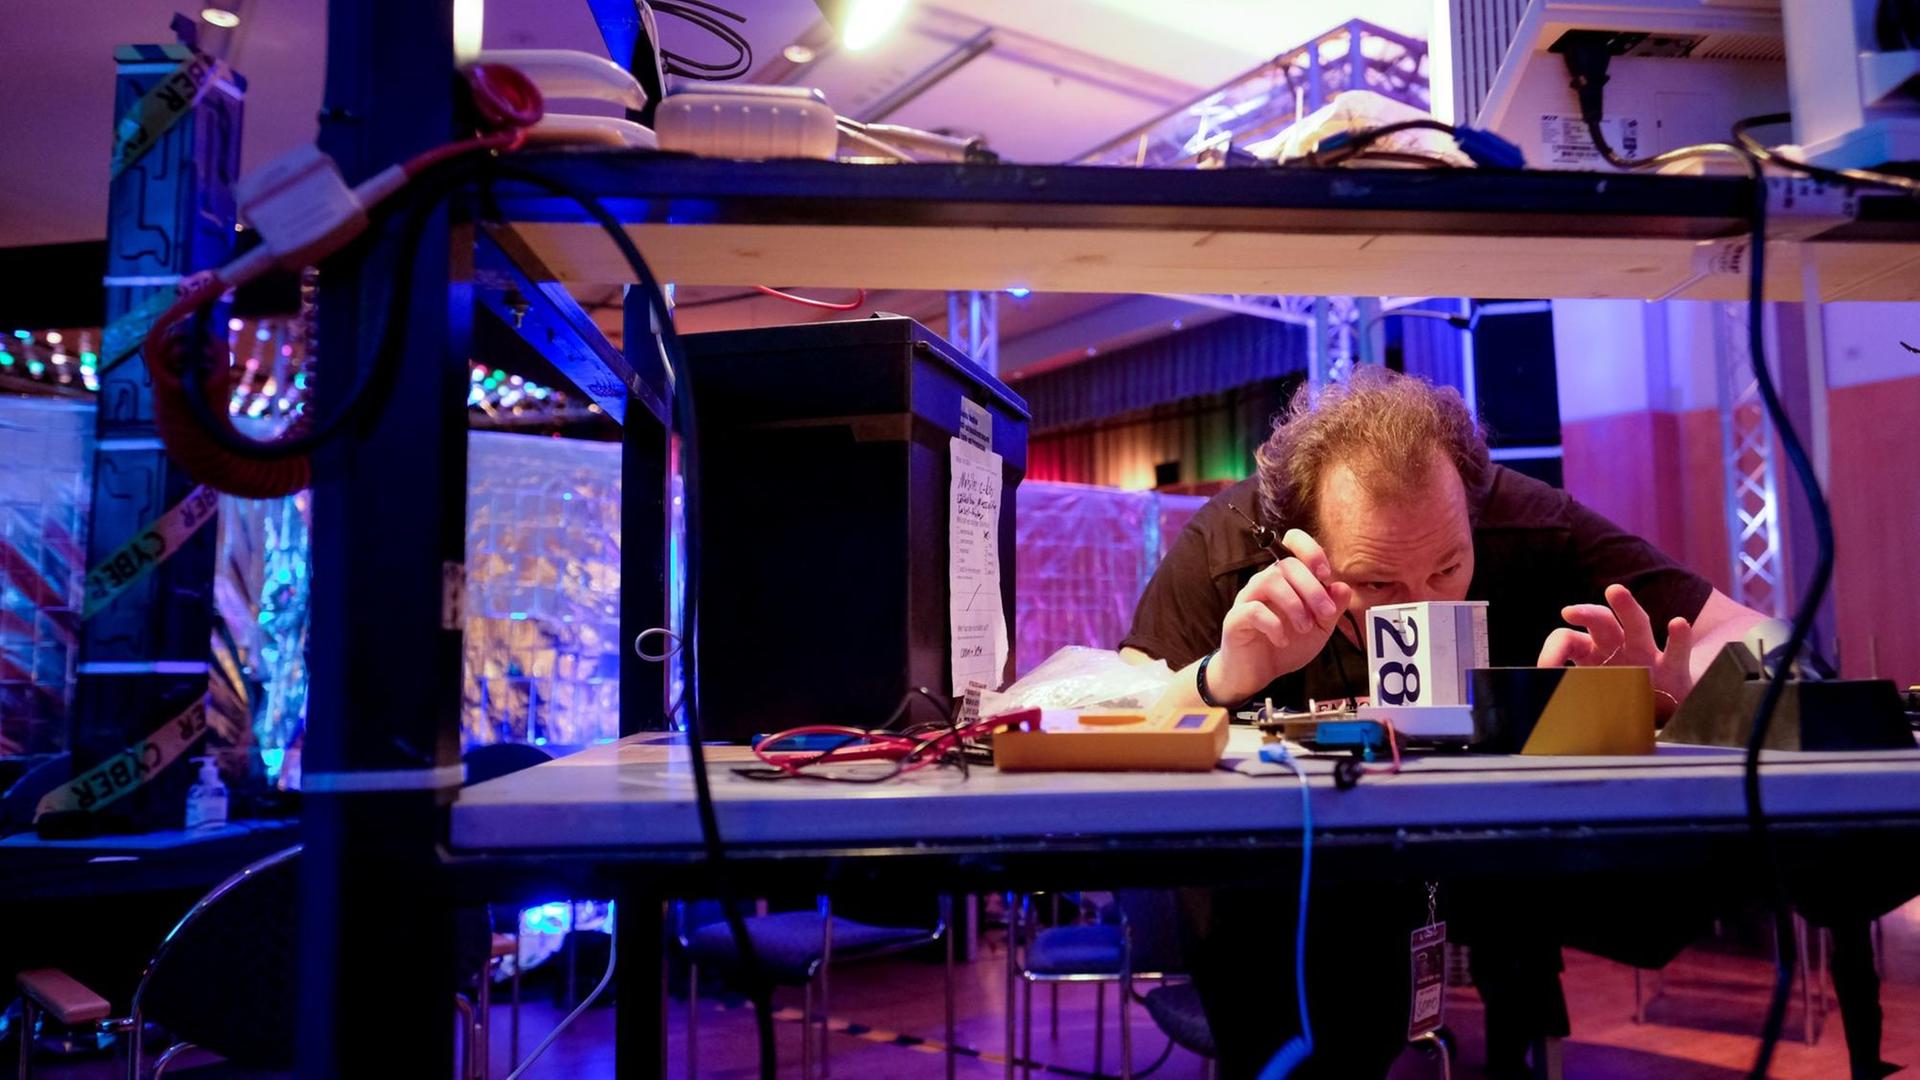 Ein Kongressbesucher arbeitet am 27.12.2016 in Hamburg beim Chaos Communication Congress (CCC) mit einem Lötkolben an einem Computerbauteil.